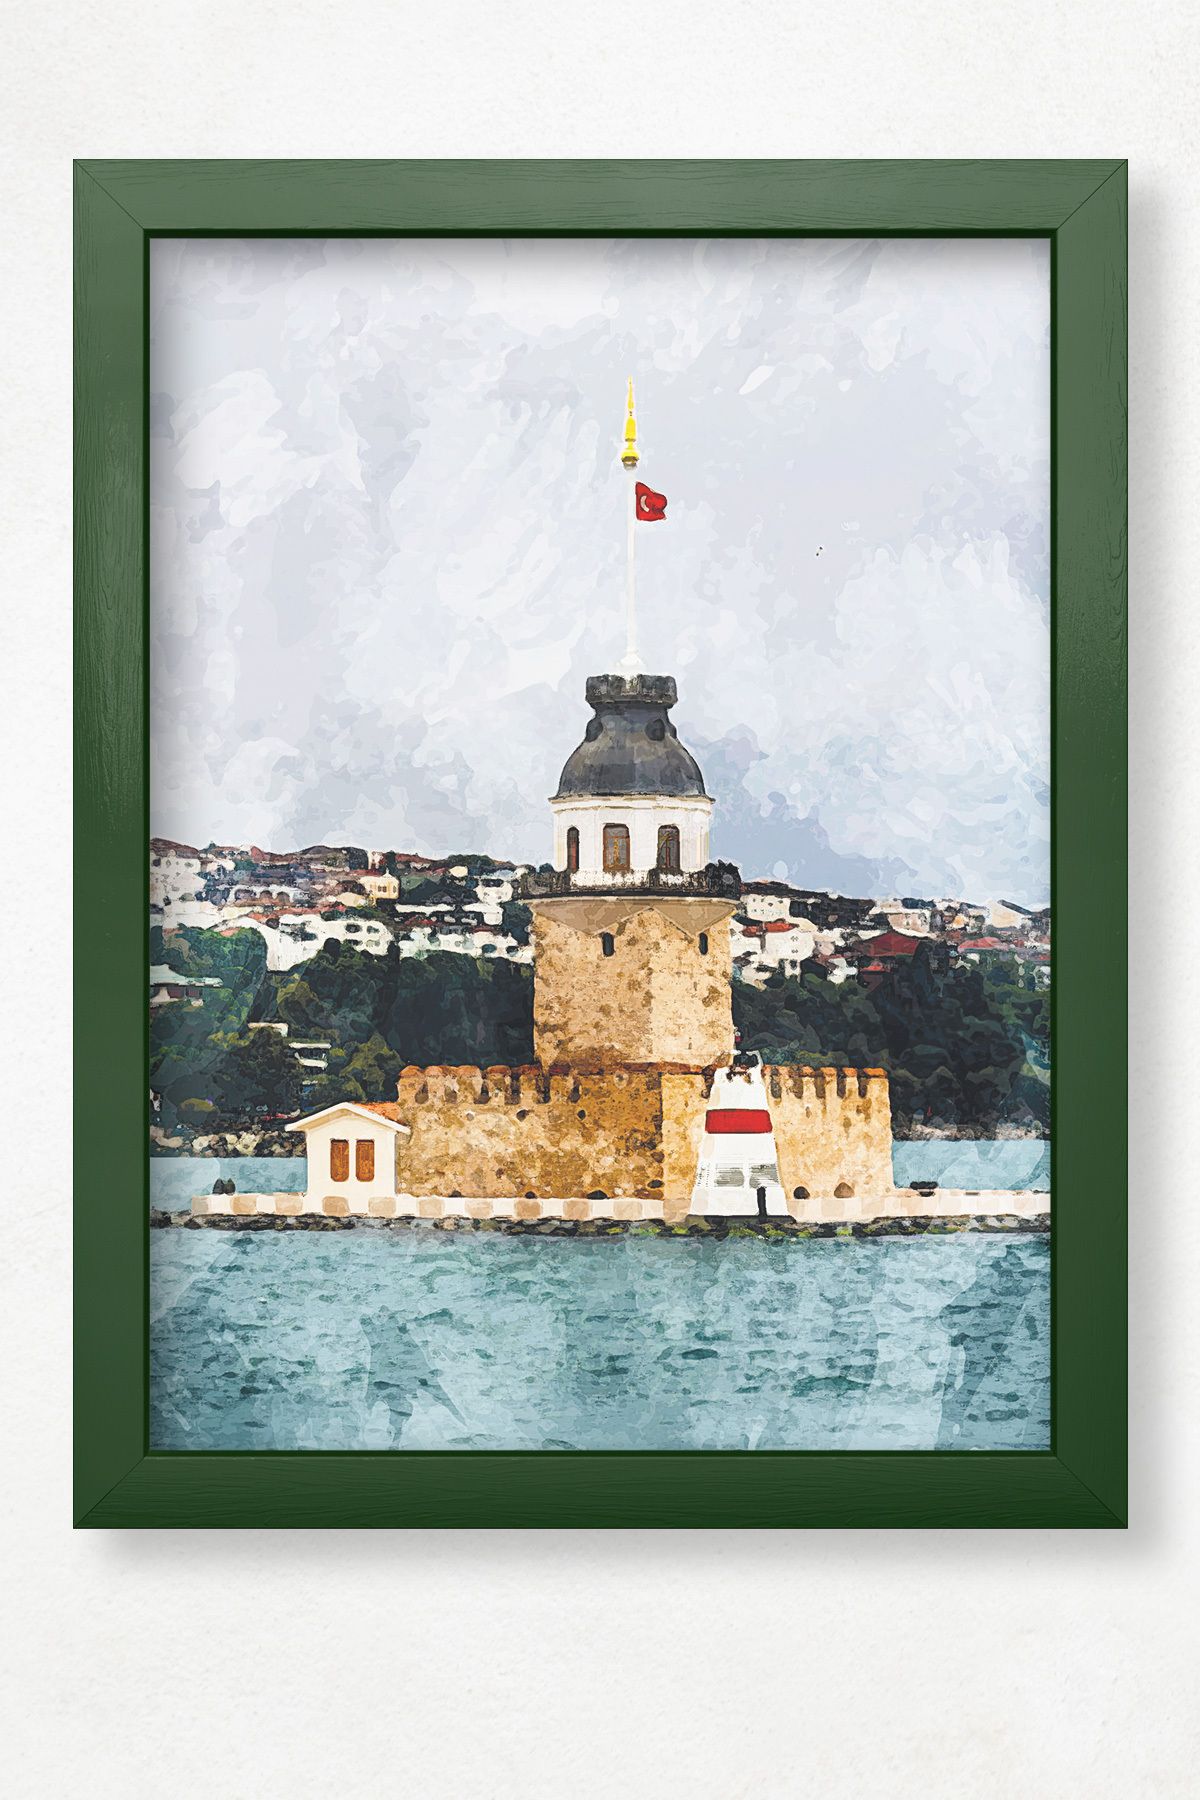 DuoArt Kız Kulesi-İstanbul/İkonik Yapılar/Efekt/Doğal Ahşap Çerçeveli Poster/Çerçeve Rengi:Koyu Yeşil